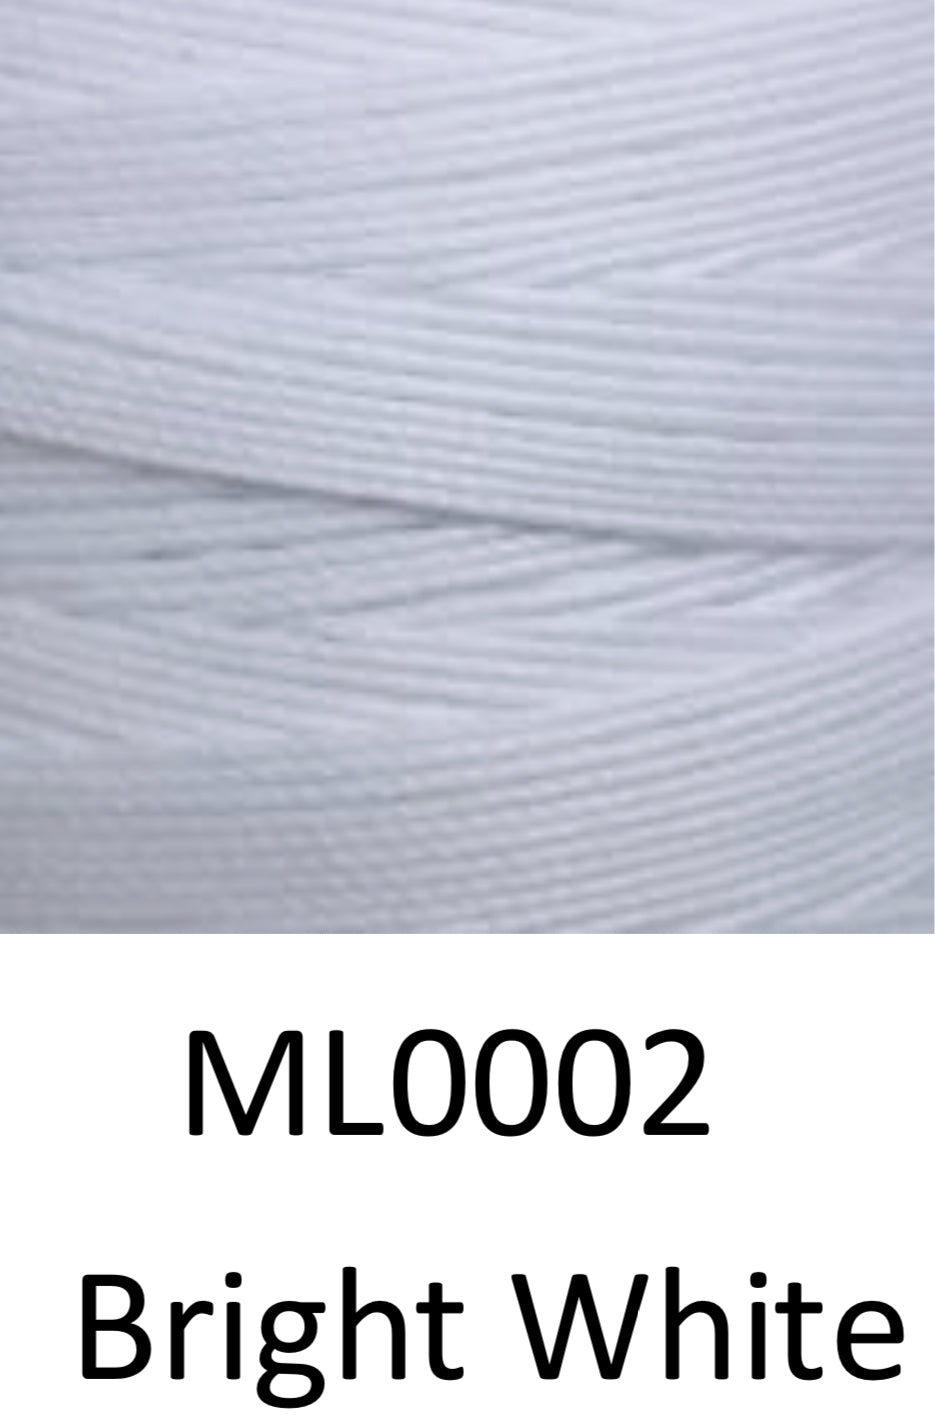 Fil de polyester ciré Xiange Twist | 15# 0,6mm | Bobines de 60 m